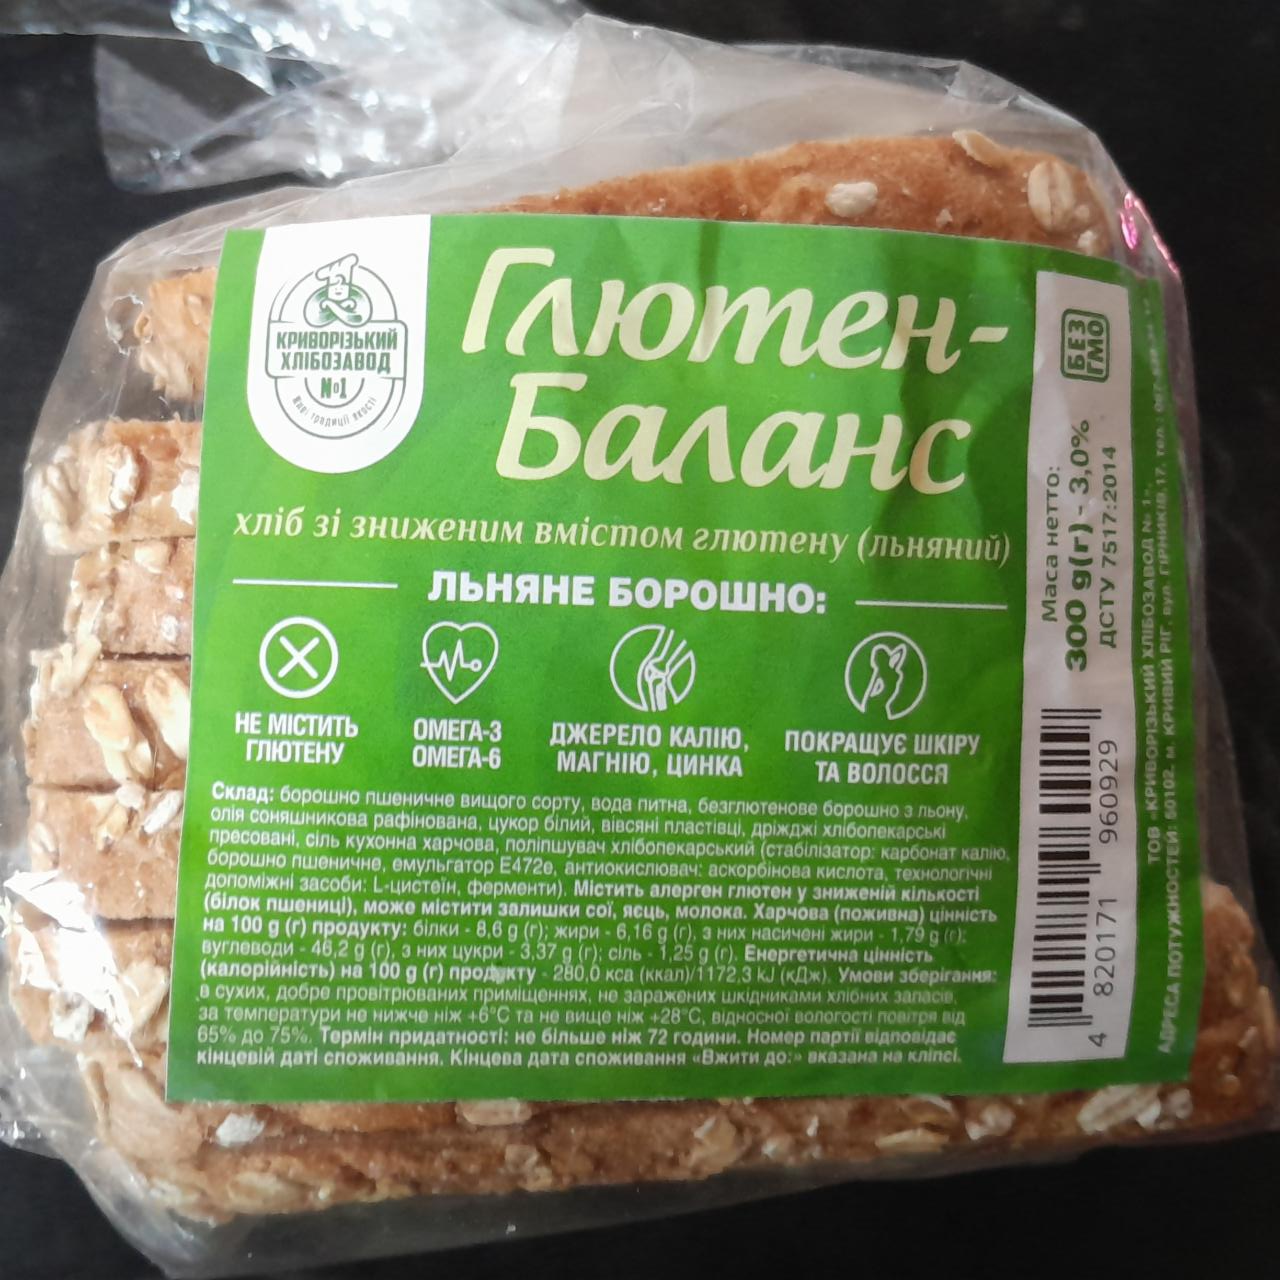 Фото - Глютен-баланс хліб зі зниженим вмістом глютену льняний Криворізький хлiбозавод №1